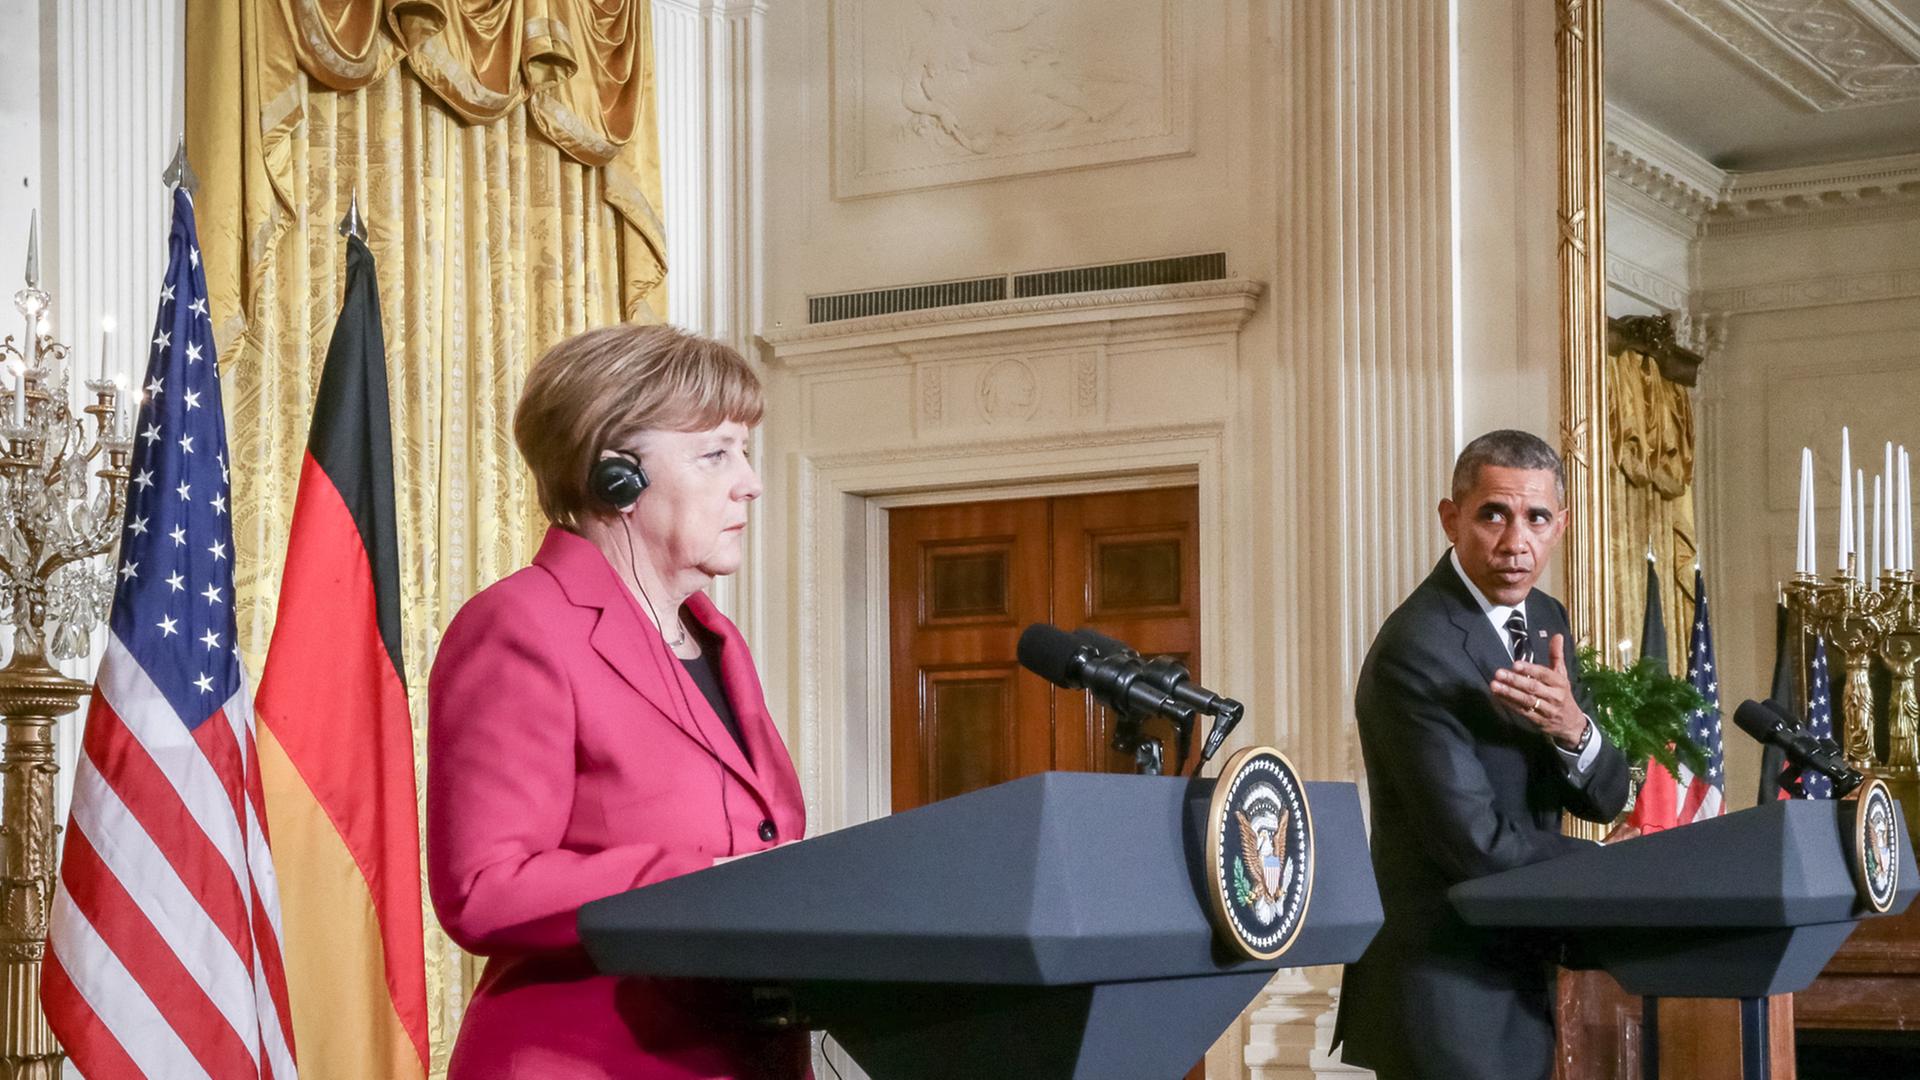 Angela Merkel und Barack Obama während ihrer Pressekonferenz am 09.02.2015 im Weißen Haus.